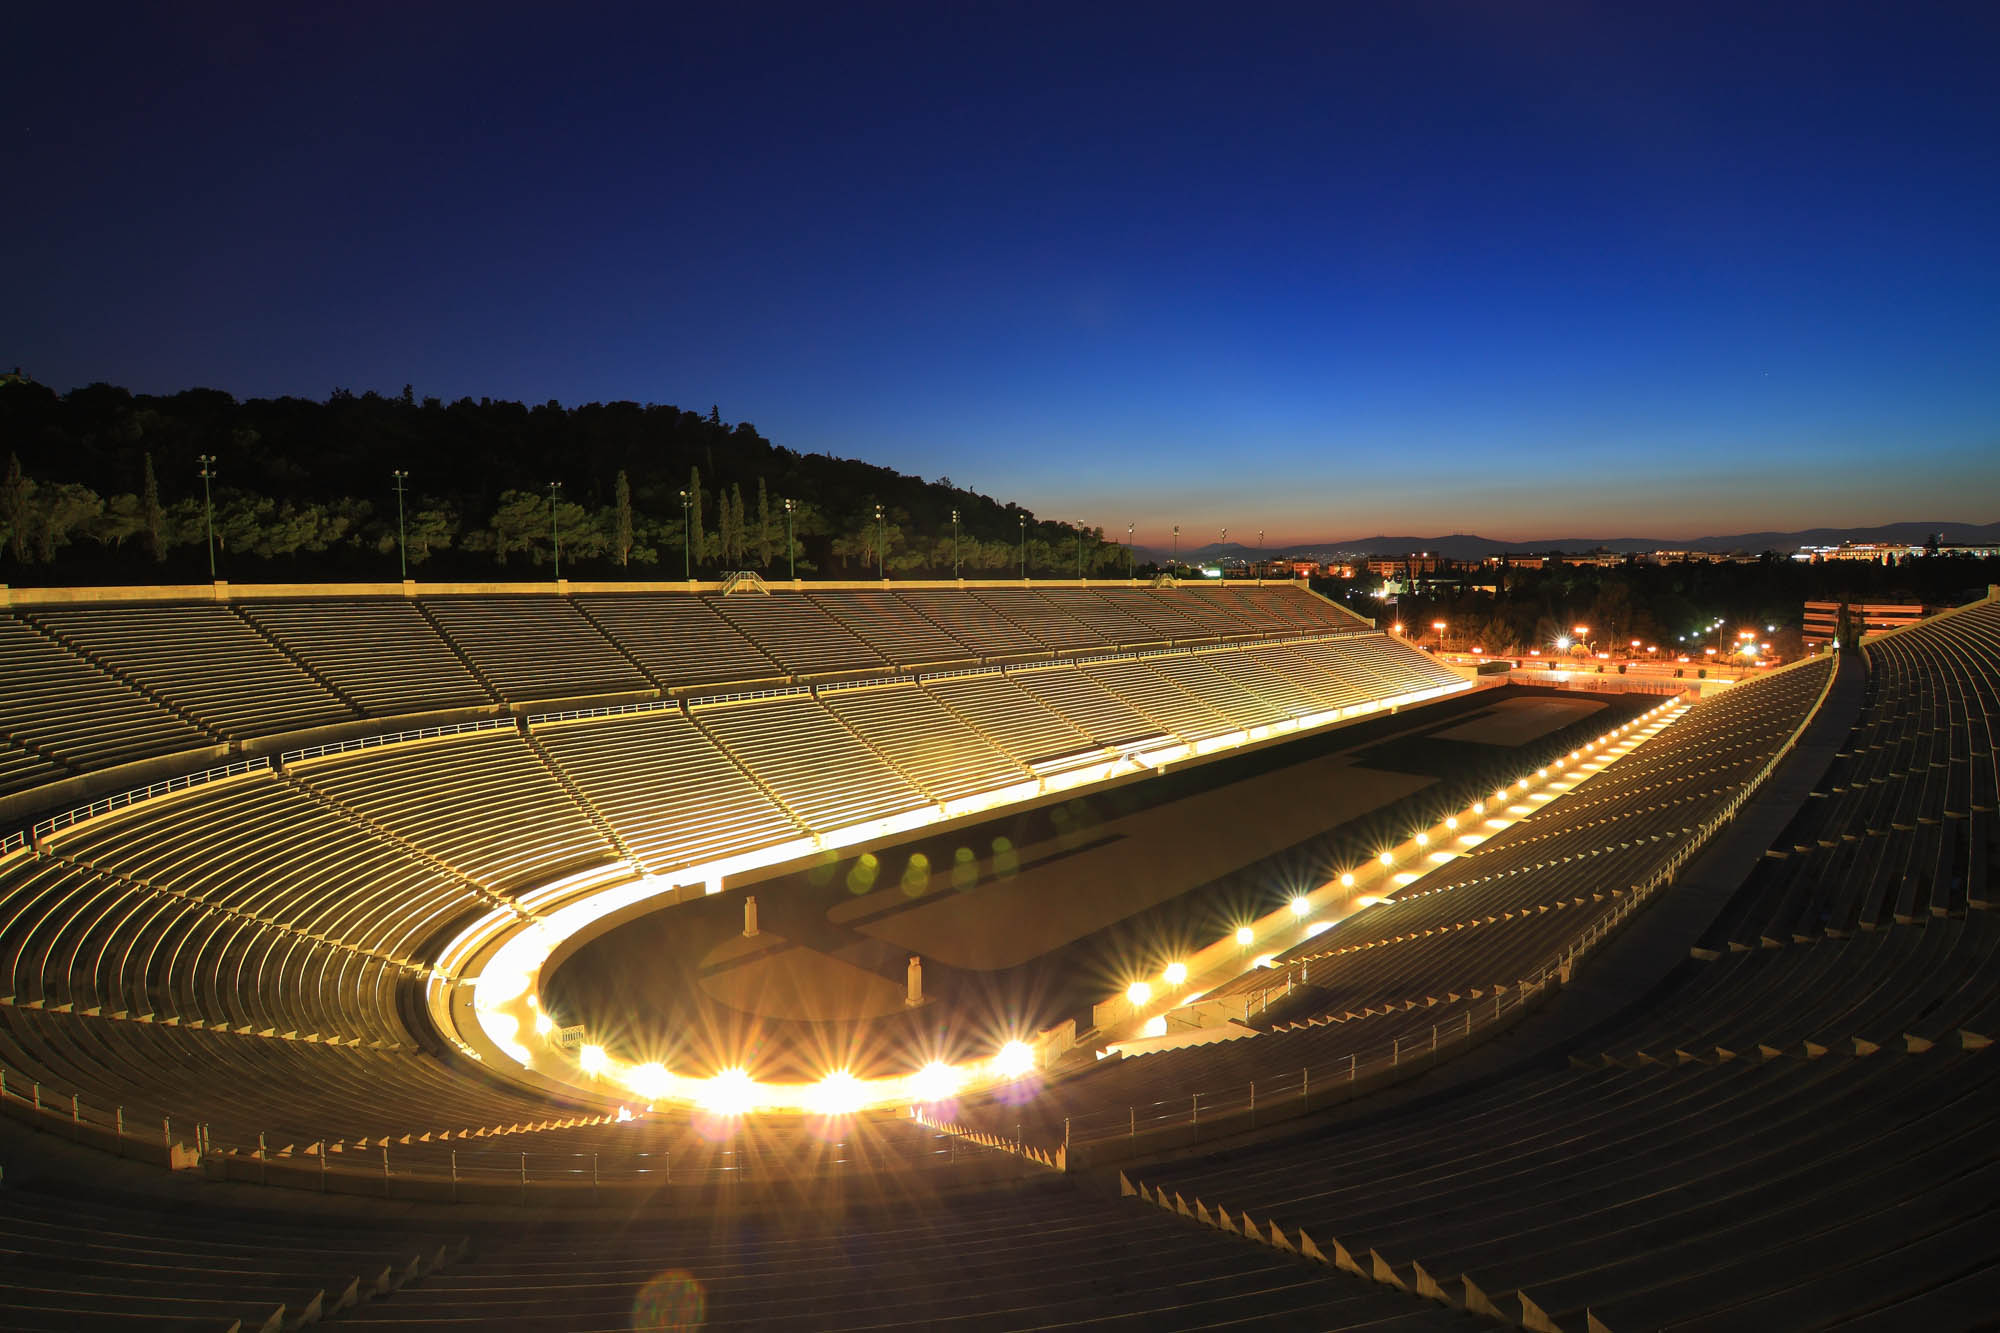 widok na oświetlony stadion a w tle zachodzące słońce